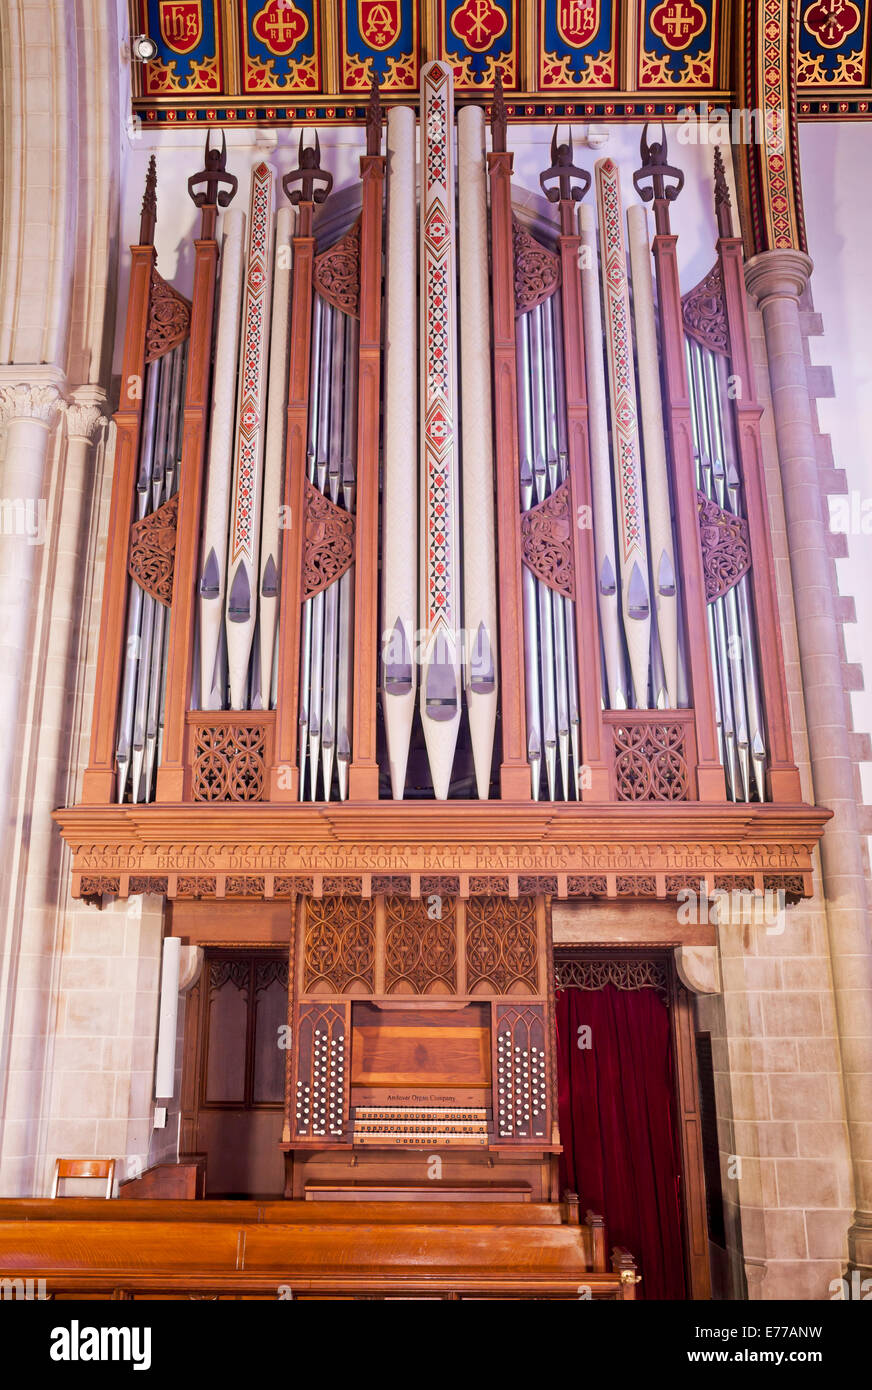 Un órgano de tubos en una iglesia. Foto de stock